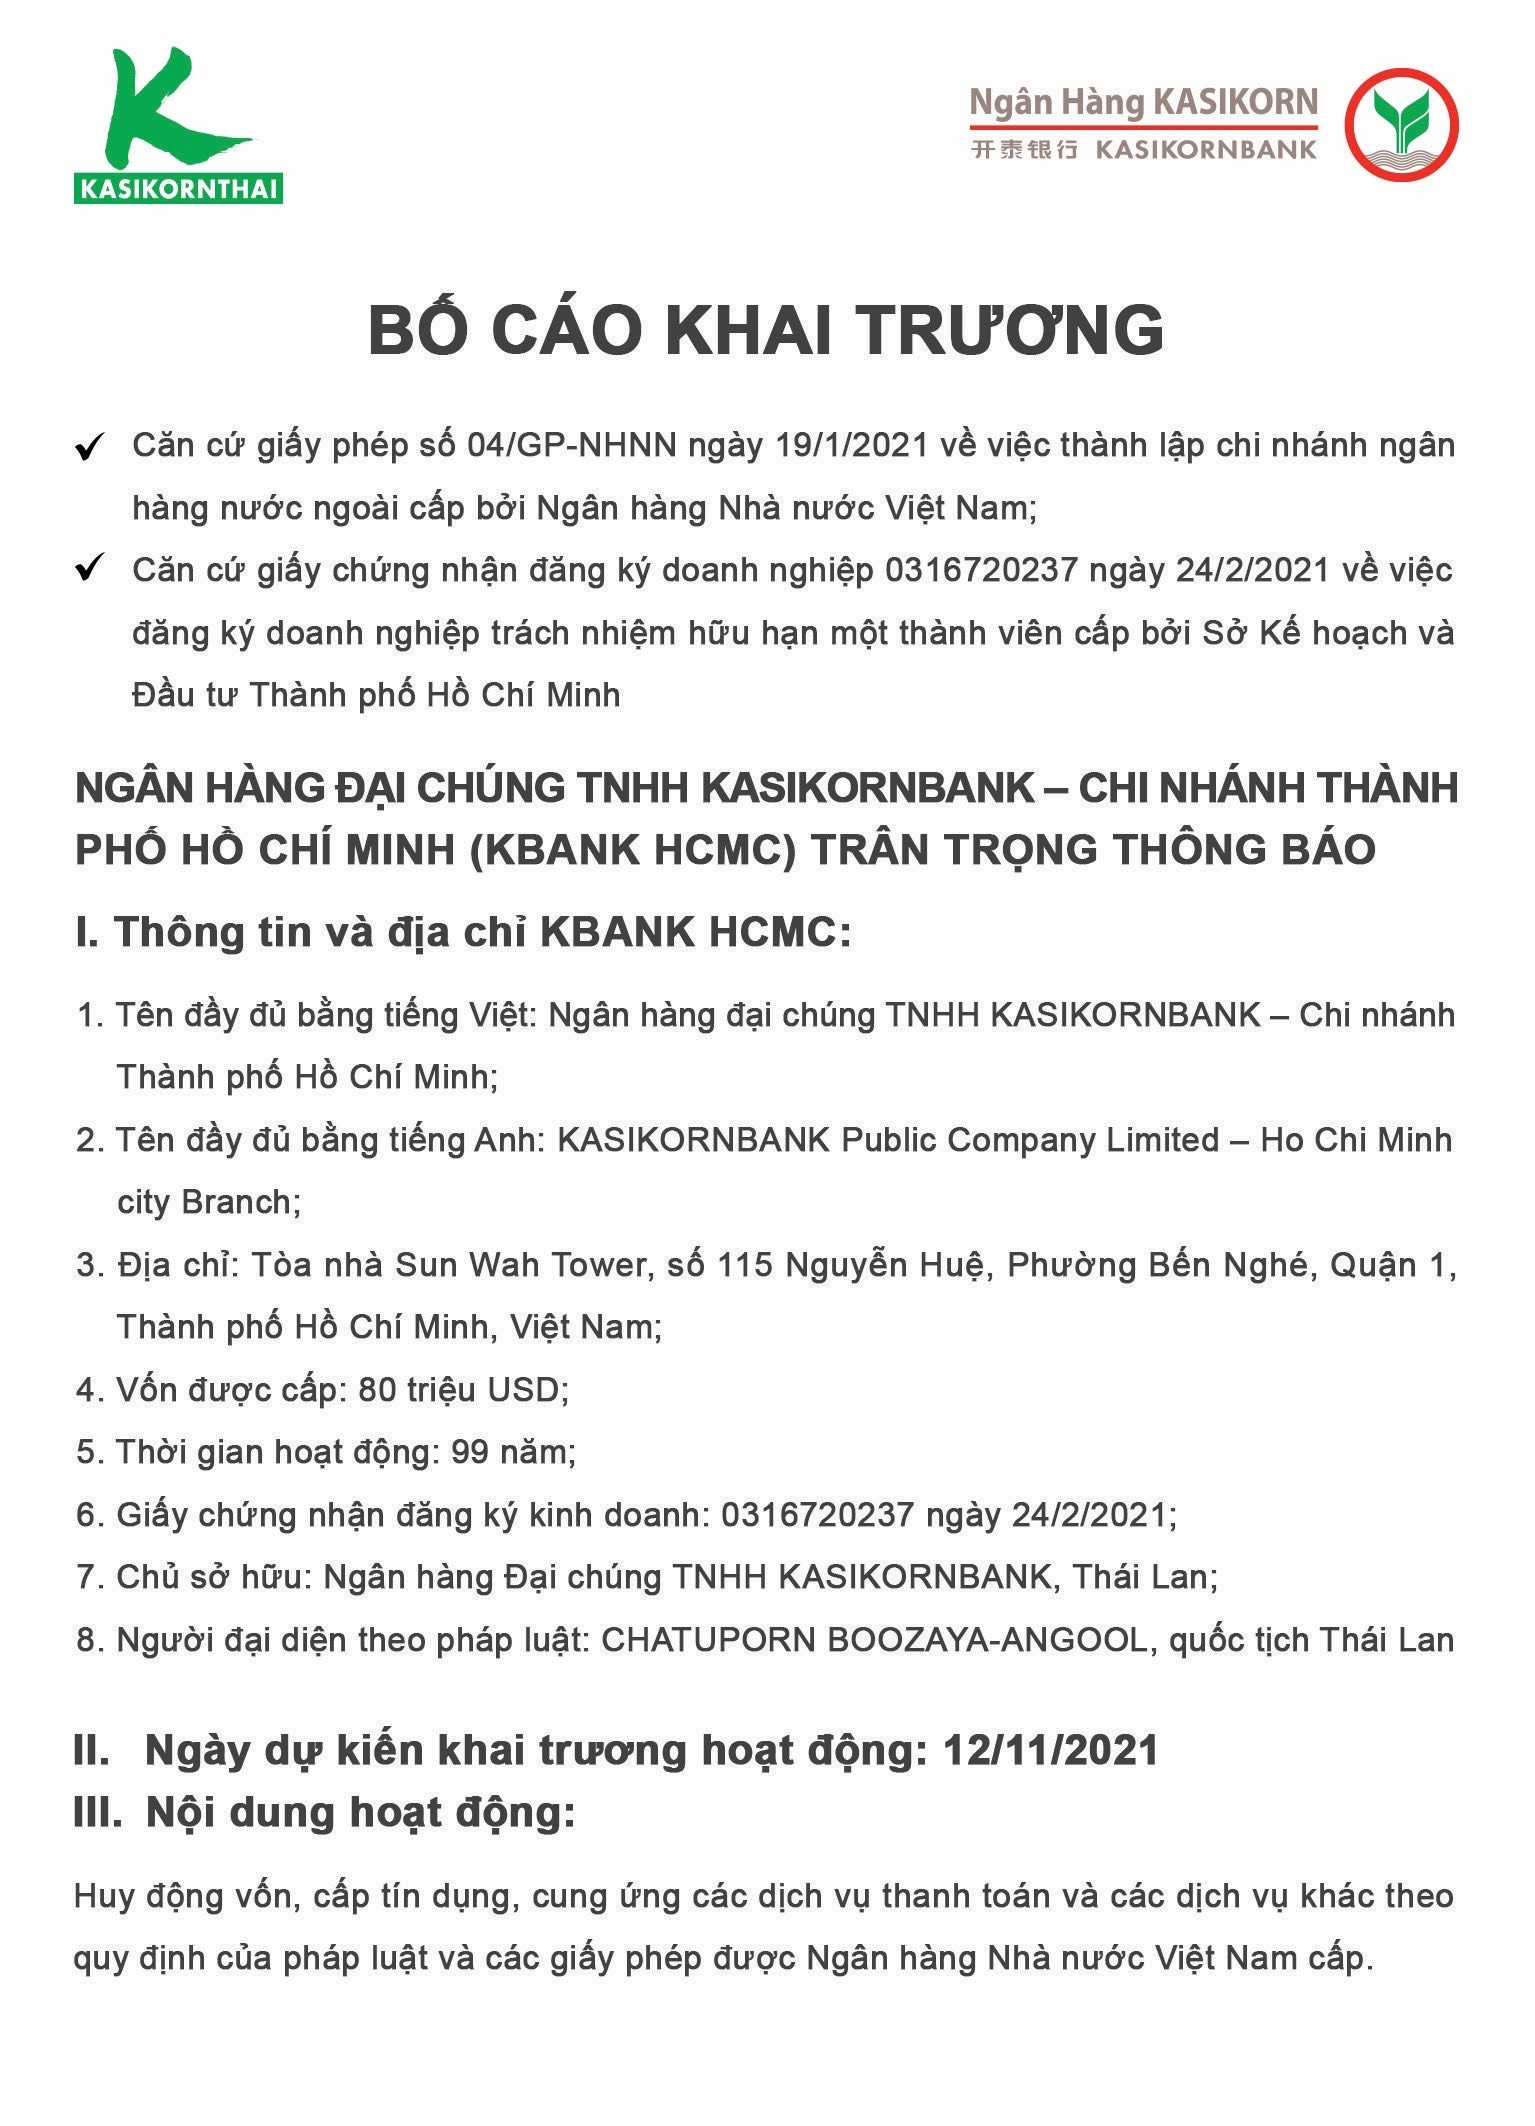 Bố cáo khai trương Ngân hàng đại chúng TNHH KASIKORNBANK chi nhánh Thành phố Hồ Chí Minh